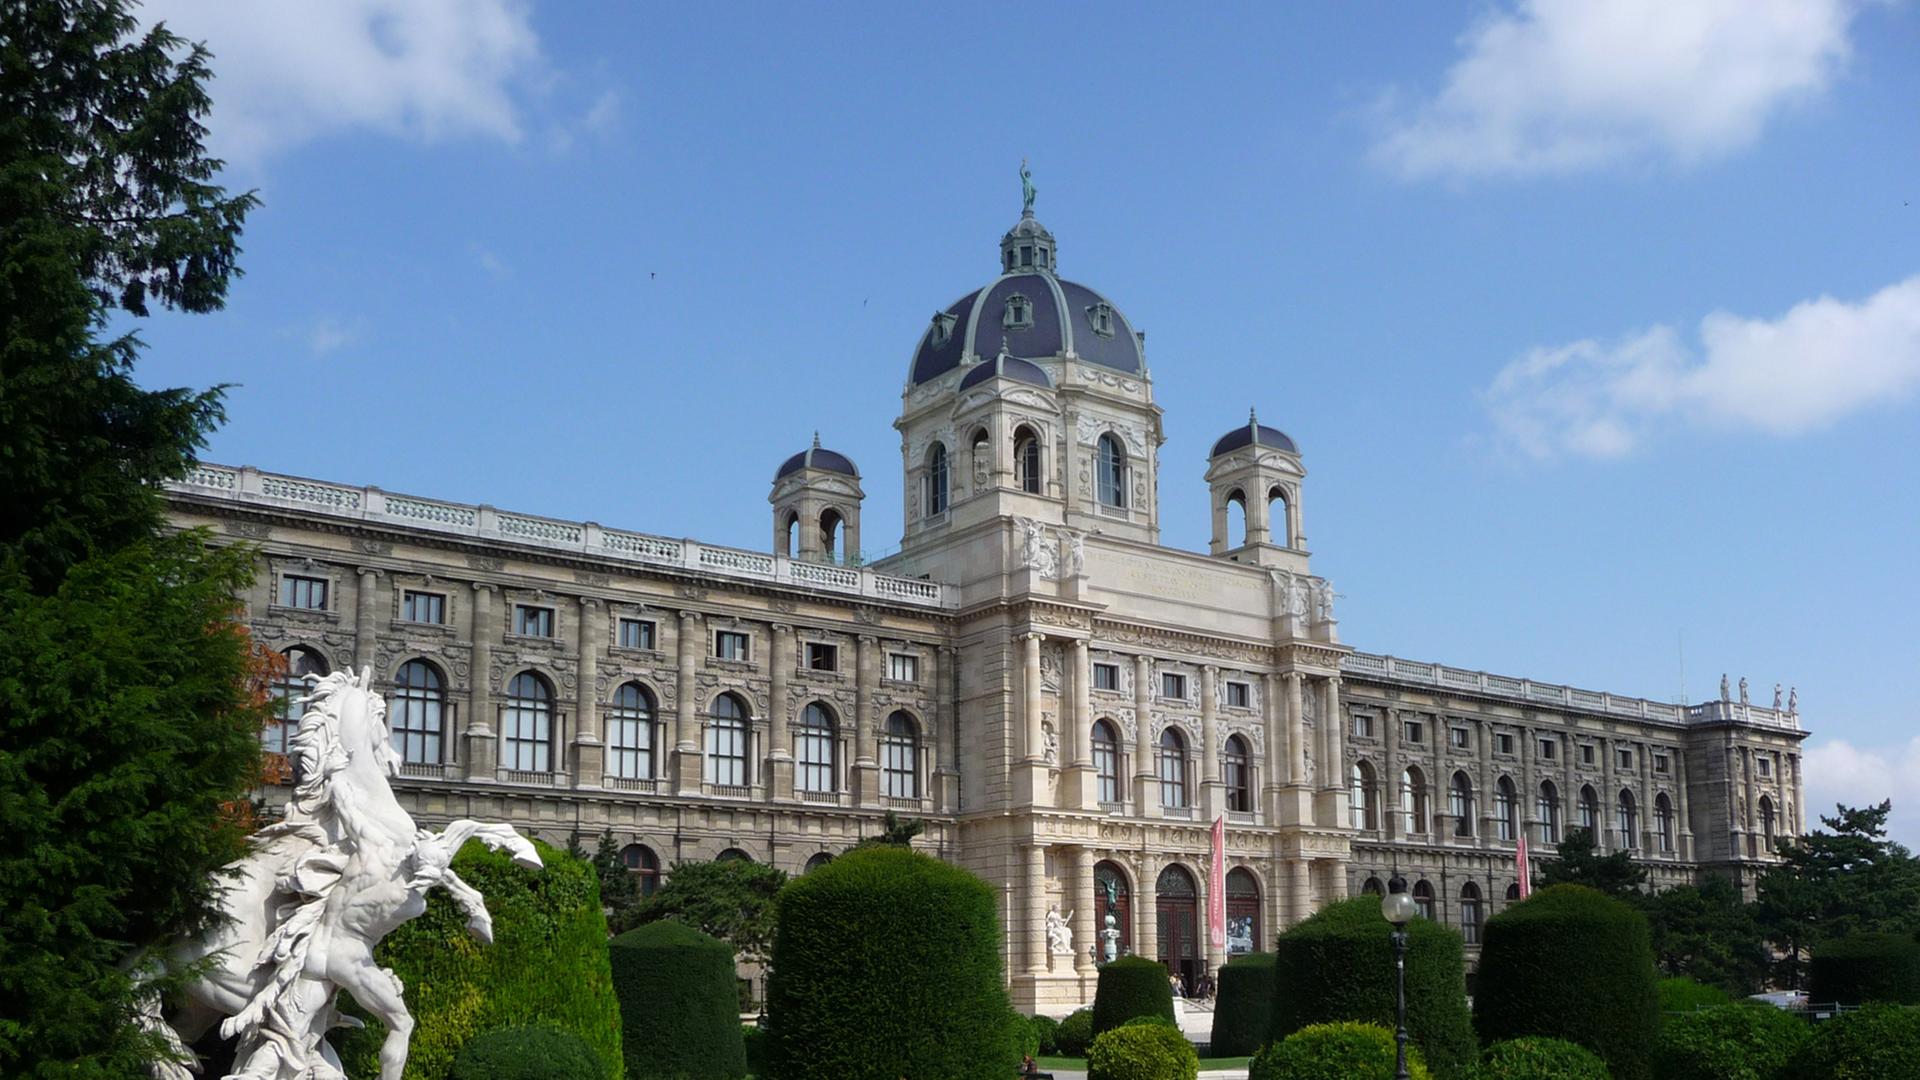 Das Naturhistorische Museum in Wien, aufgenommen am 06.08.2009. Es liegt dem Kunsthistorischen Museum gegenüber und wurde 1872 von Gottfried Semper und Karl von Hasenauer für die kaiserlichen Sammlungen entworfen und bis 1881 fertiggestellt.